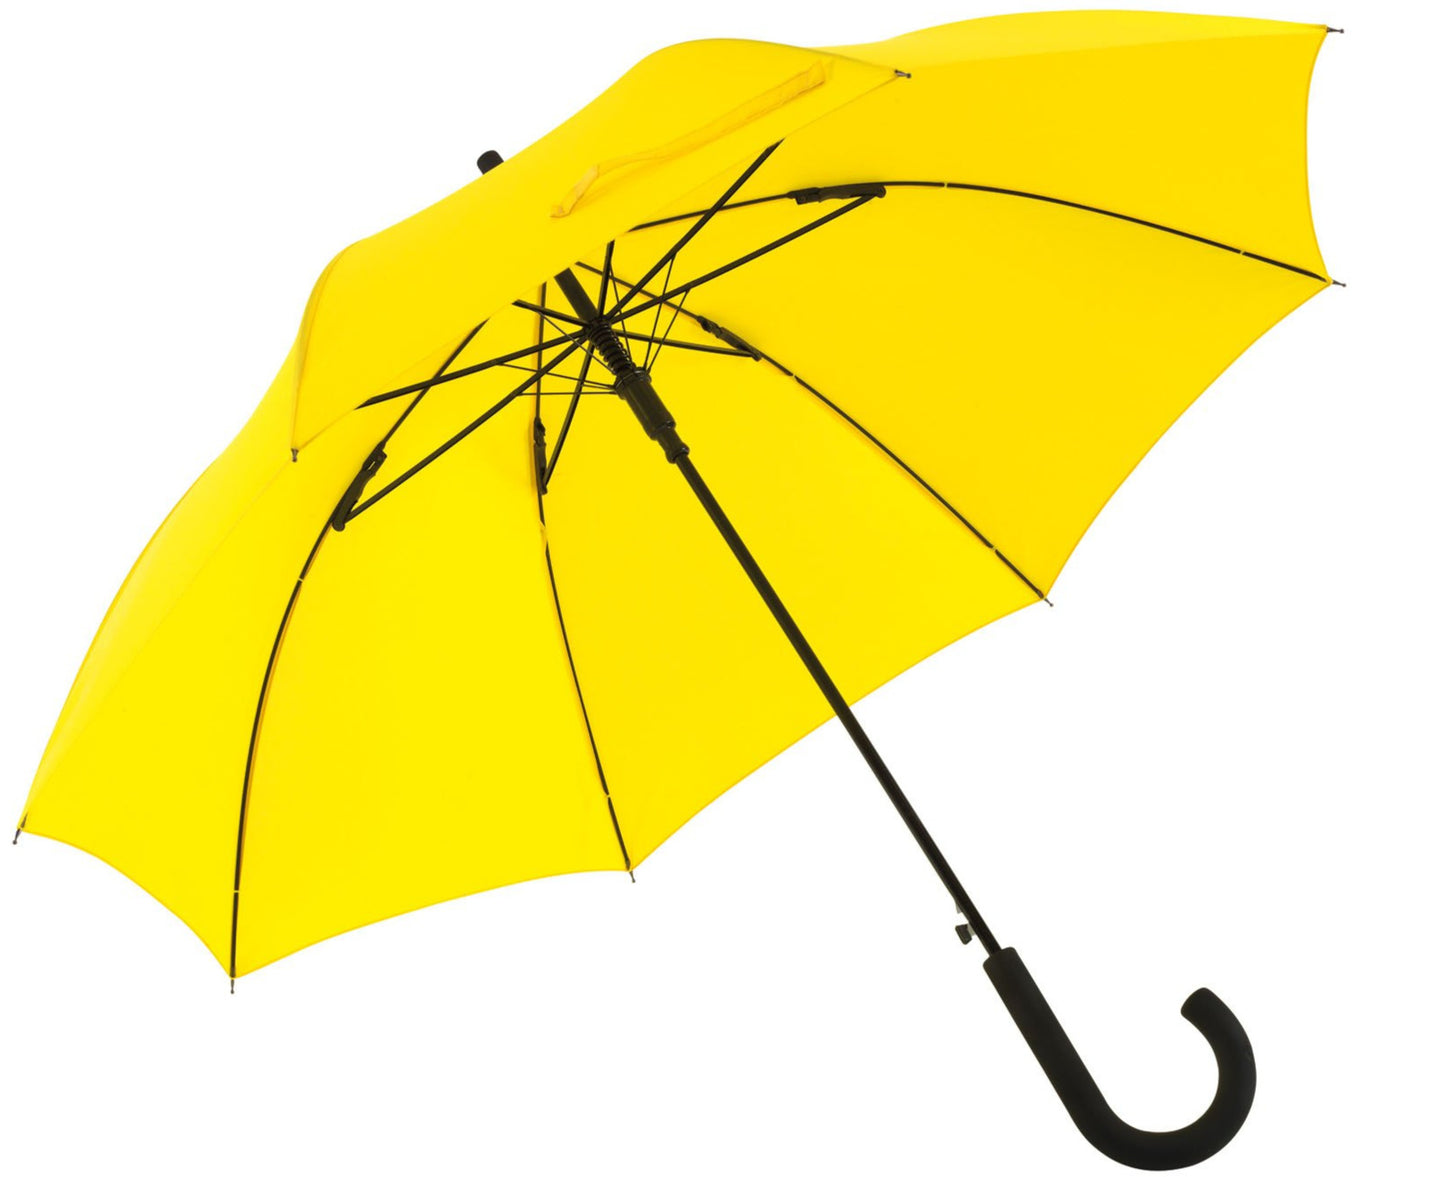 Κίτρινη ομπρέλα βροχής, μακριά, αυτόματη, αντιανεμική και με ανθρακόνημα.